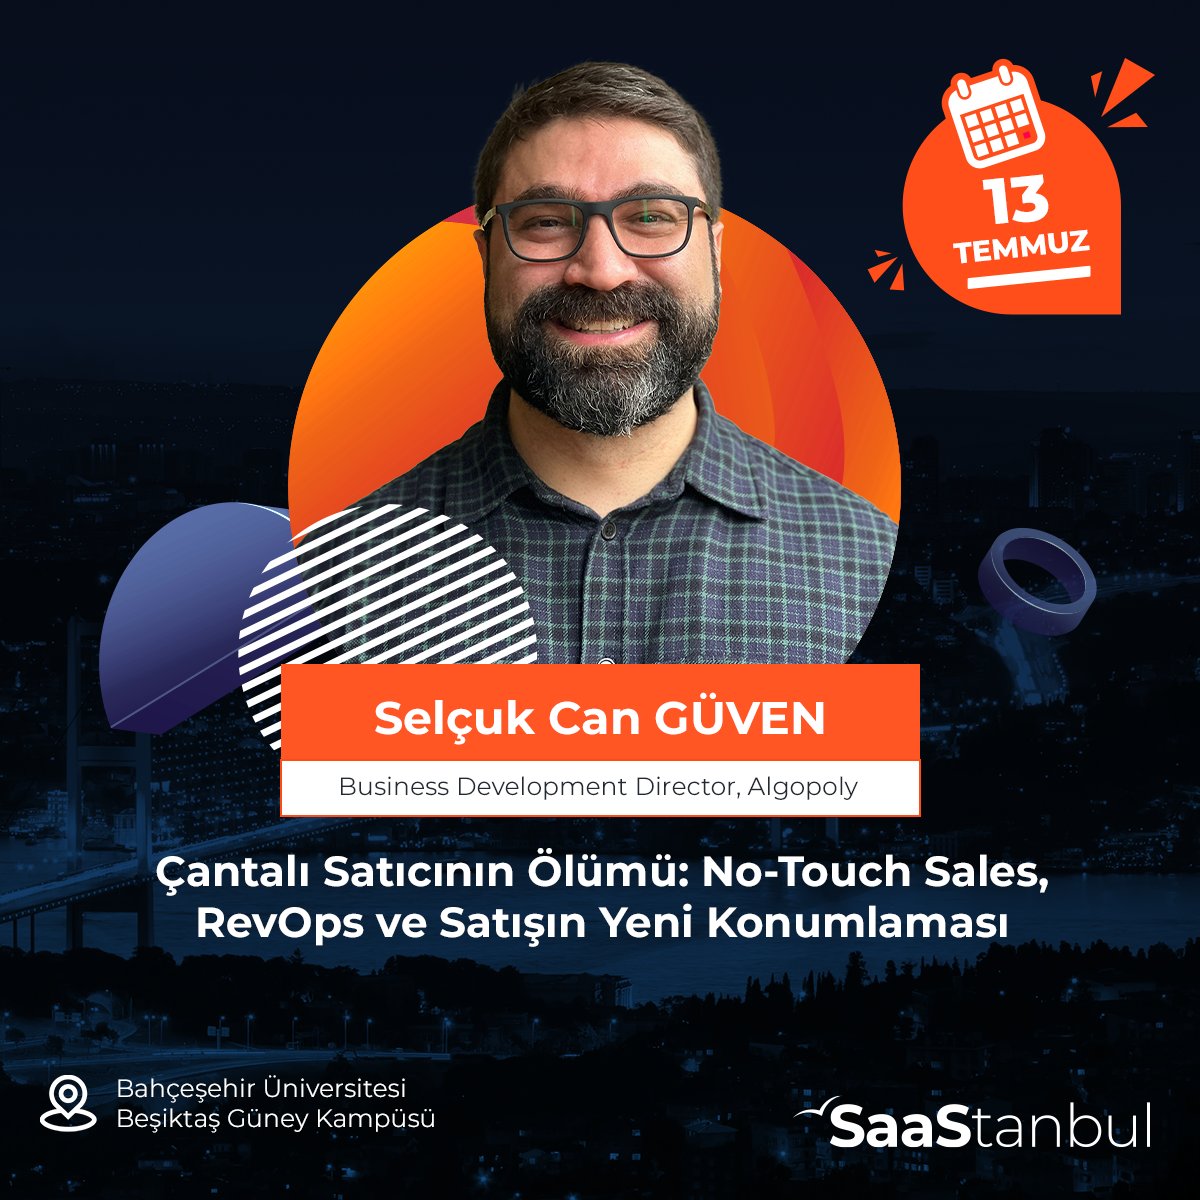 Sektörün uzmanları 13 Temmuz'da buluşuyor! 

'Çantalı Satıcının Ölümü: No-Touch Sales, RevOps ve Satışın Yeni Konumlaması' isimli konuşmasıyla @scguven SaaStanbul'da! 

Etkinlik, biletler ve daha fazlası için; 
👉 saastanbul.com

#SaaStanbul #SaaS #İstanbul